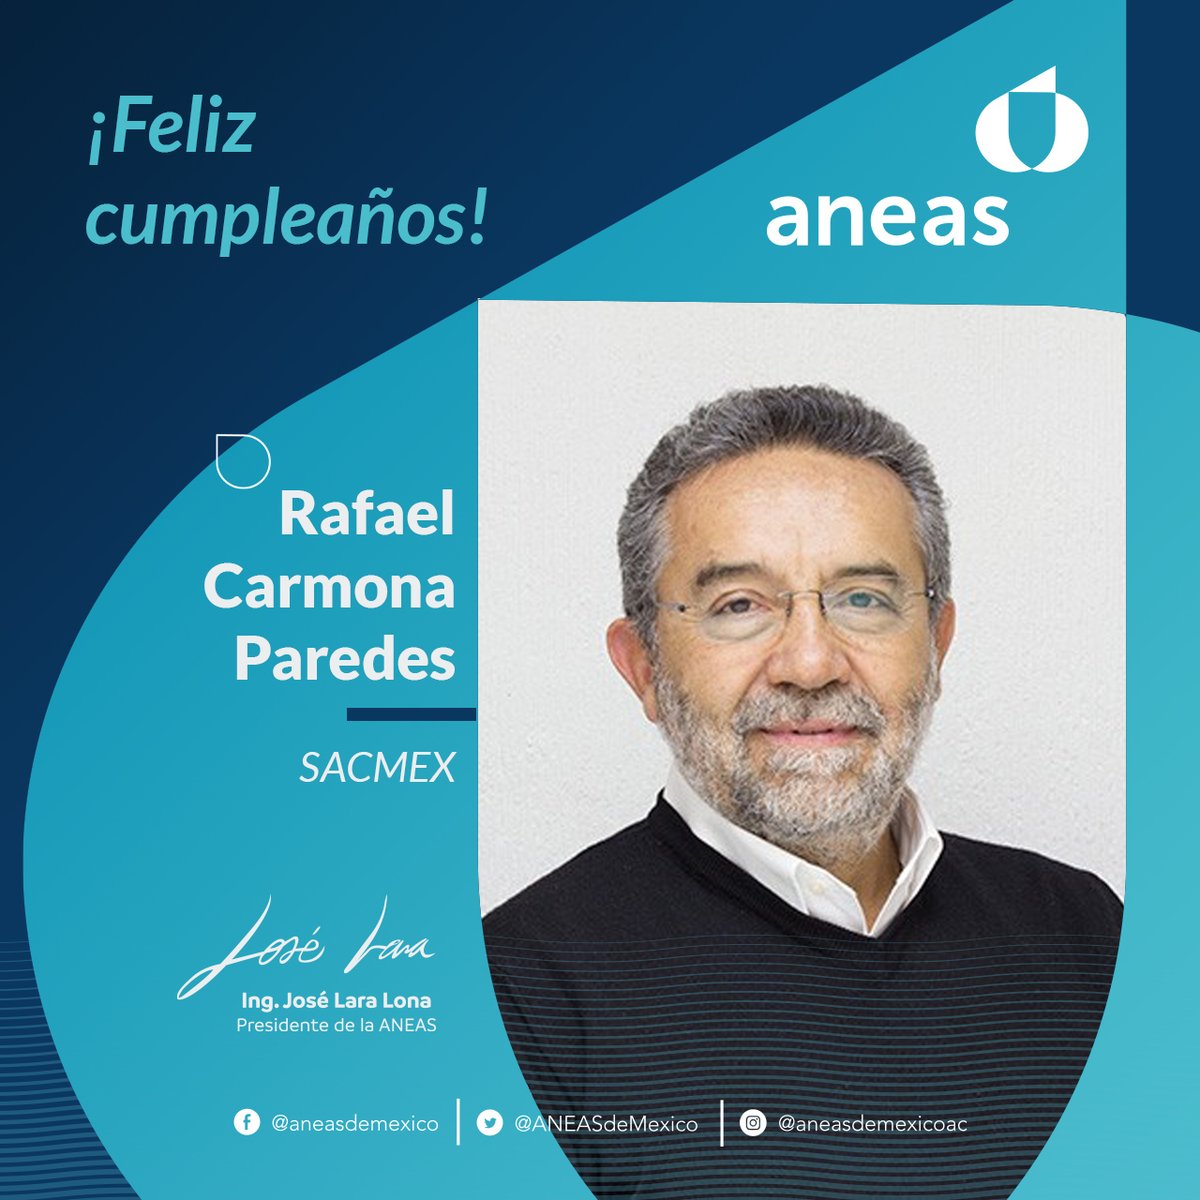 🎂🎂🎂El Consejo Directivo de #ANEAS y su Presidente, Ingeniero @joselaralona1, envía una calurosa felicitación a Rafael Carmona Paredes, Coordinador General de @SacmexCDMX, por su cumpleaños. ¡Muchas felicidades! 🥳🥳🥳🥳 #HBD #ANEAS